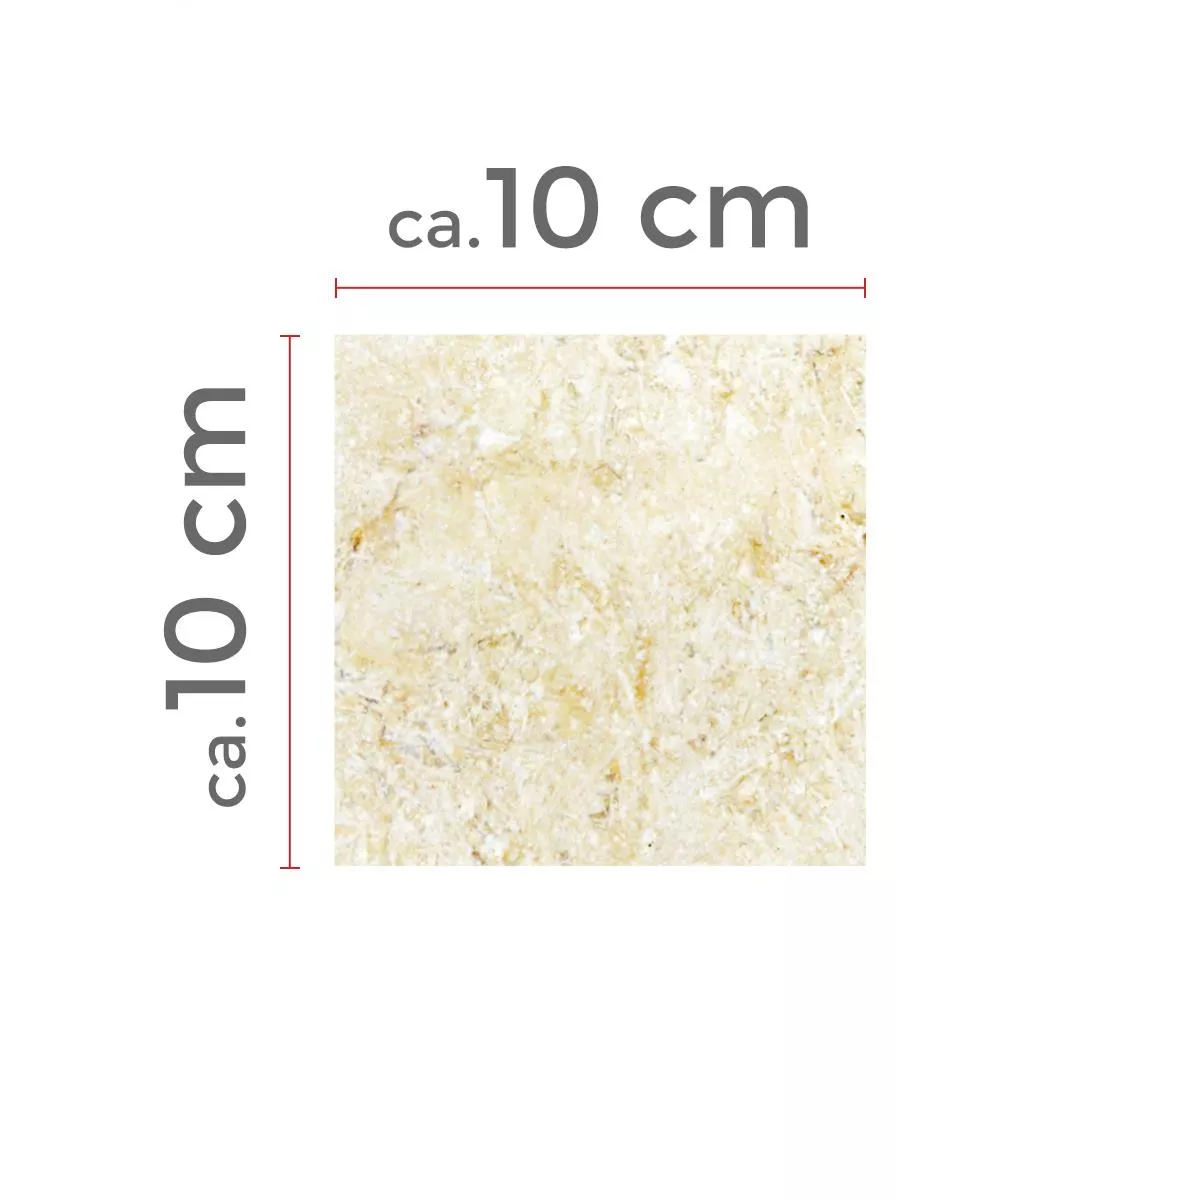 Campione Pietra Naturale Piastrelle Calcare Garbagna Beige 10x10cm